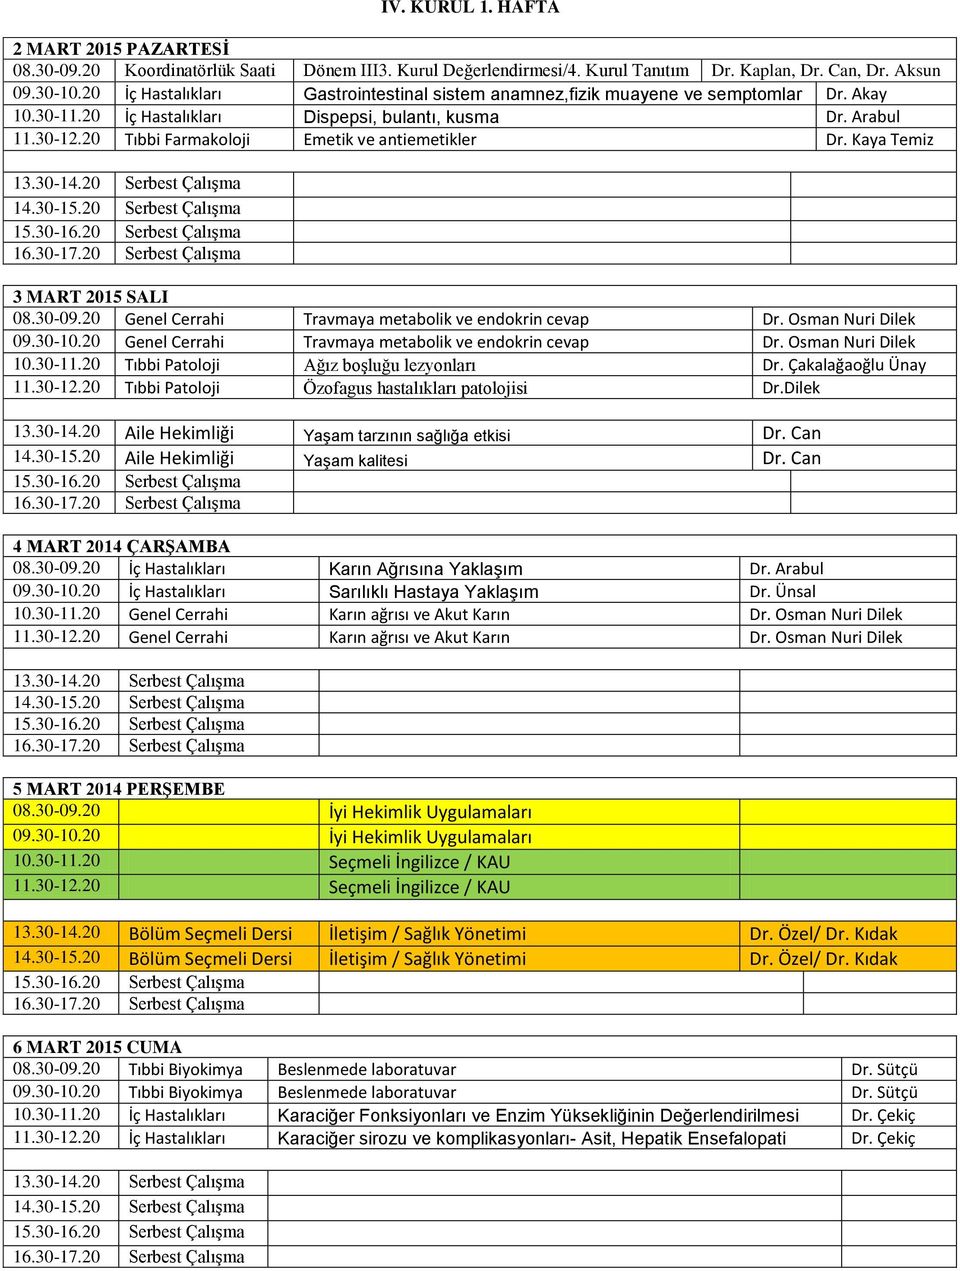 20 Tıbbi Farmakoloji Emetik ve antiemetikler Dr. Kaya Temiz 3 MART 2015 SALI 08.30-09.20 Genel Cerrahi Travmaya metabolik ve endokrin cevap Dr. Osman Nuri Dilek 09.30-10.